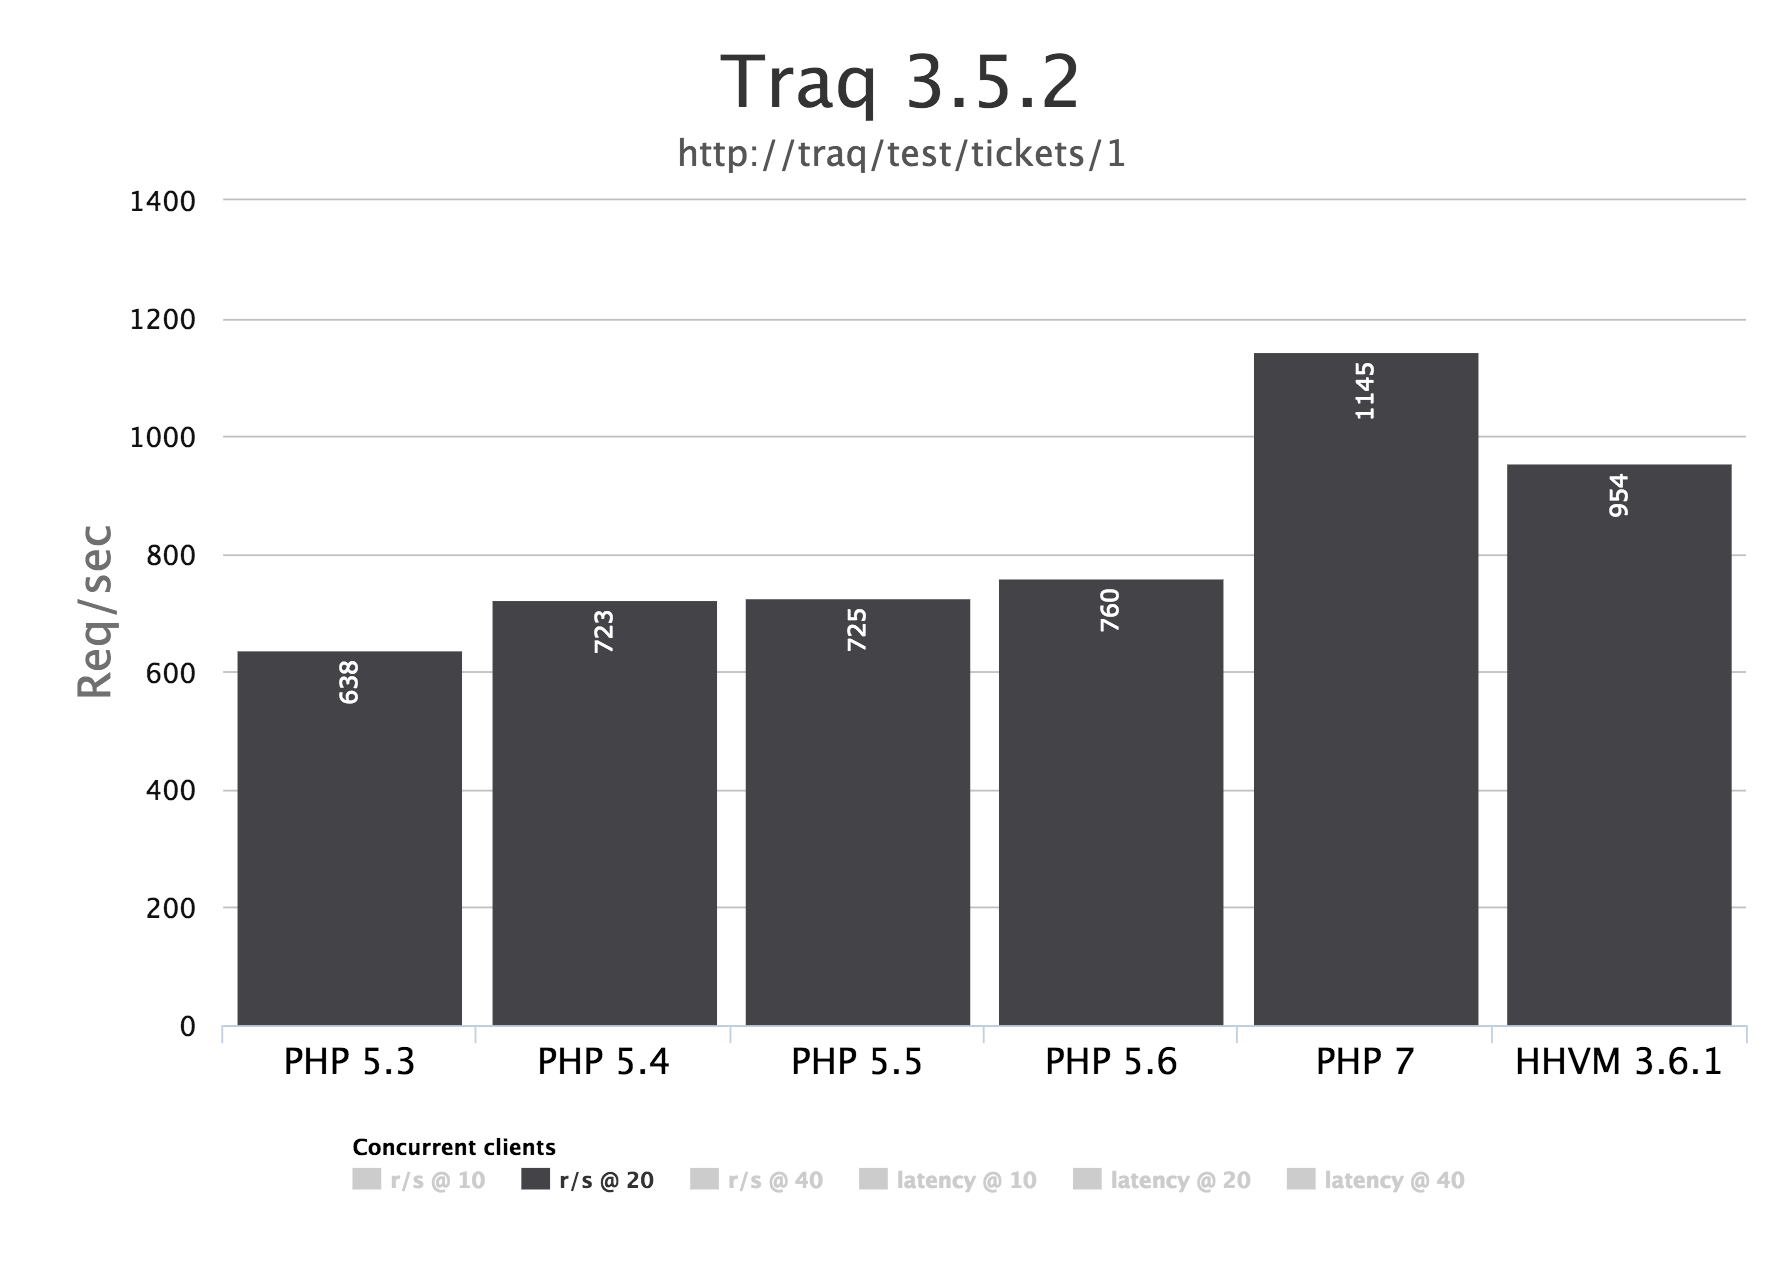 Traq 3.5.2